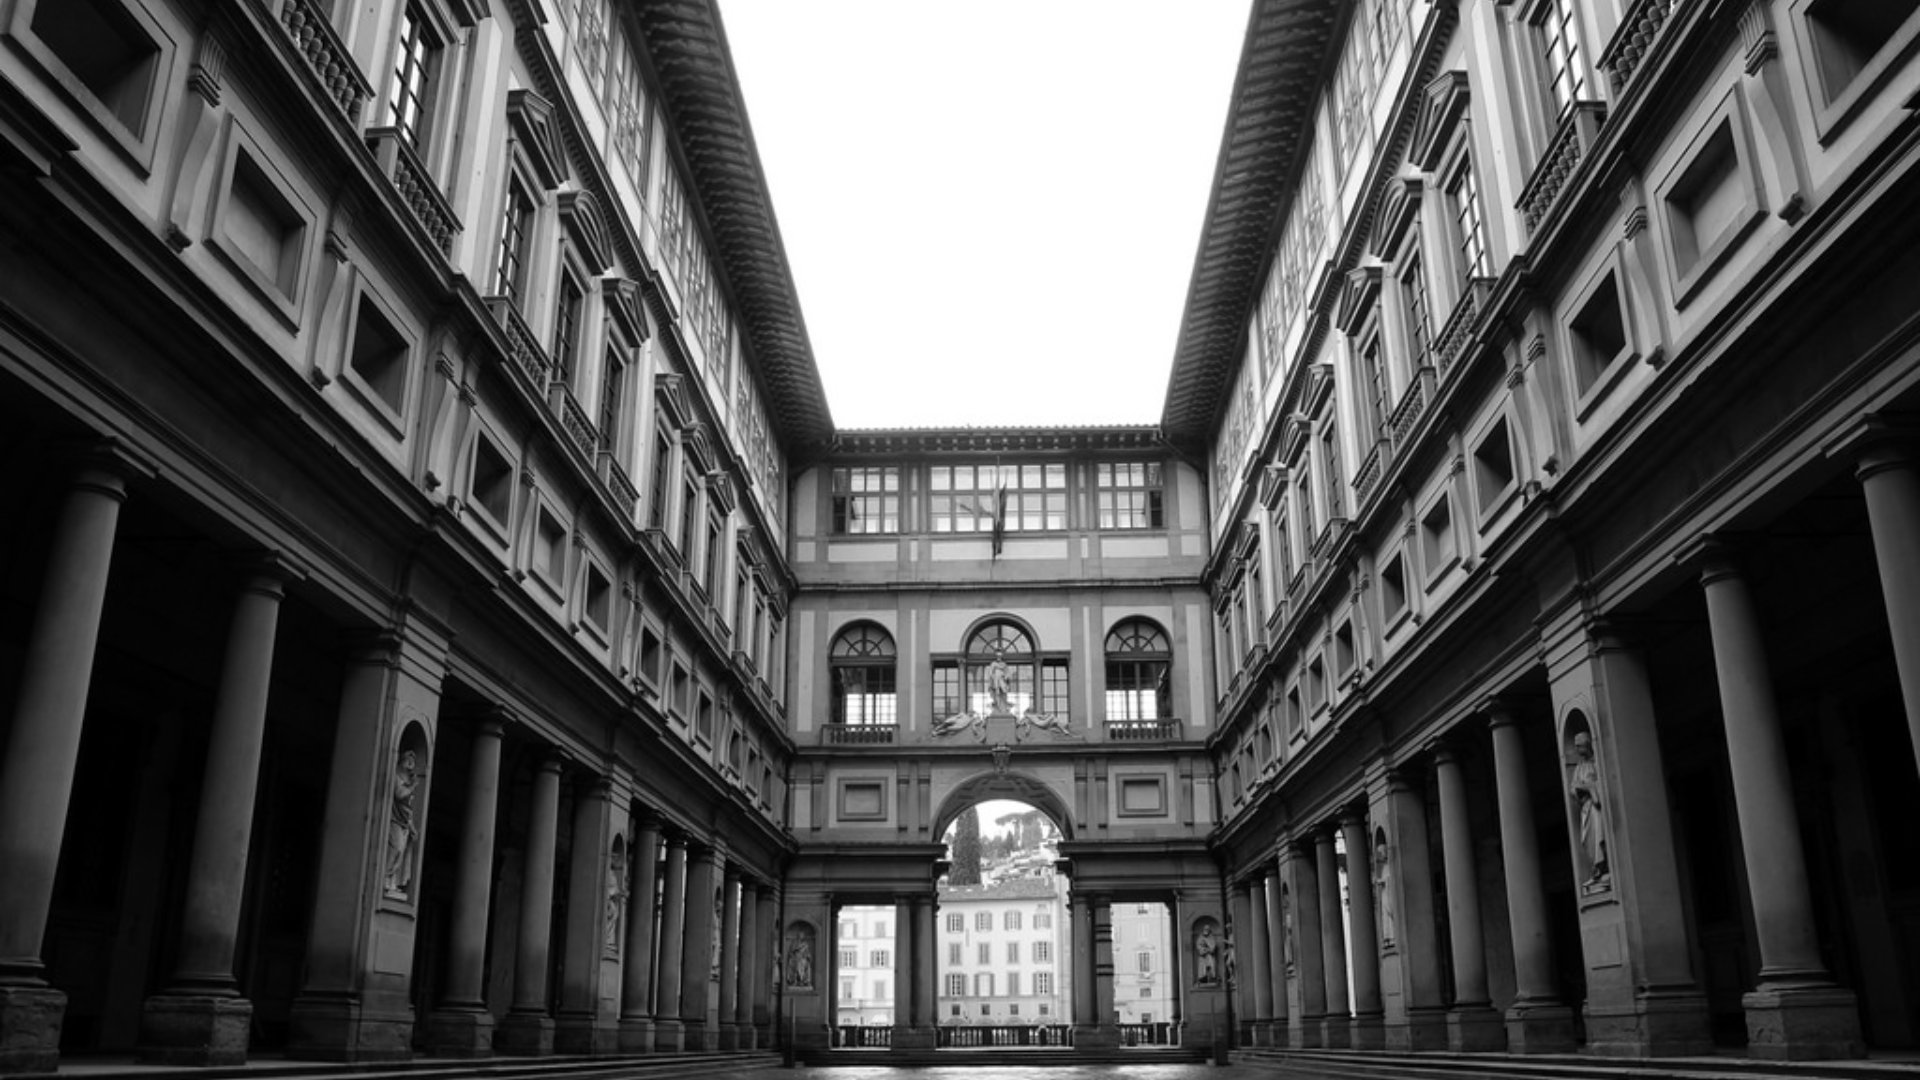 Uffizi Gallery